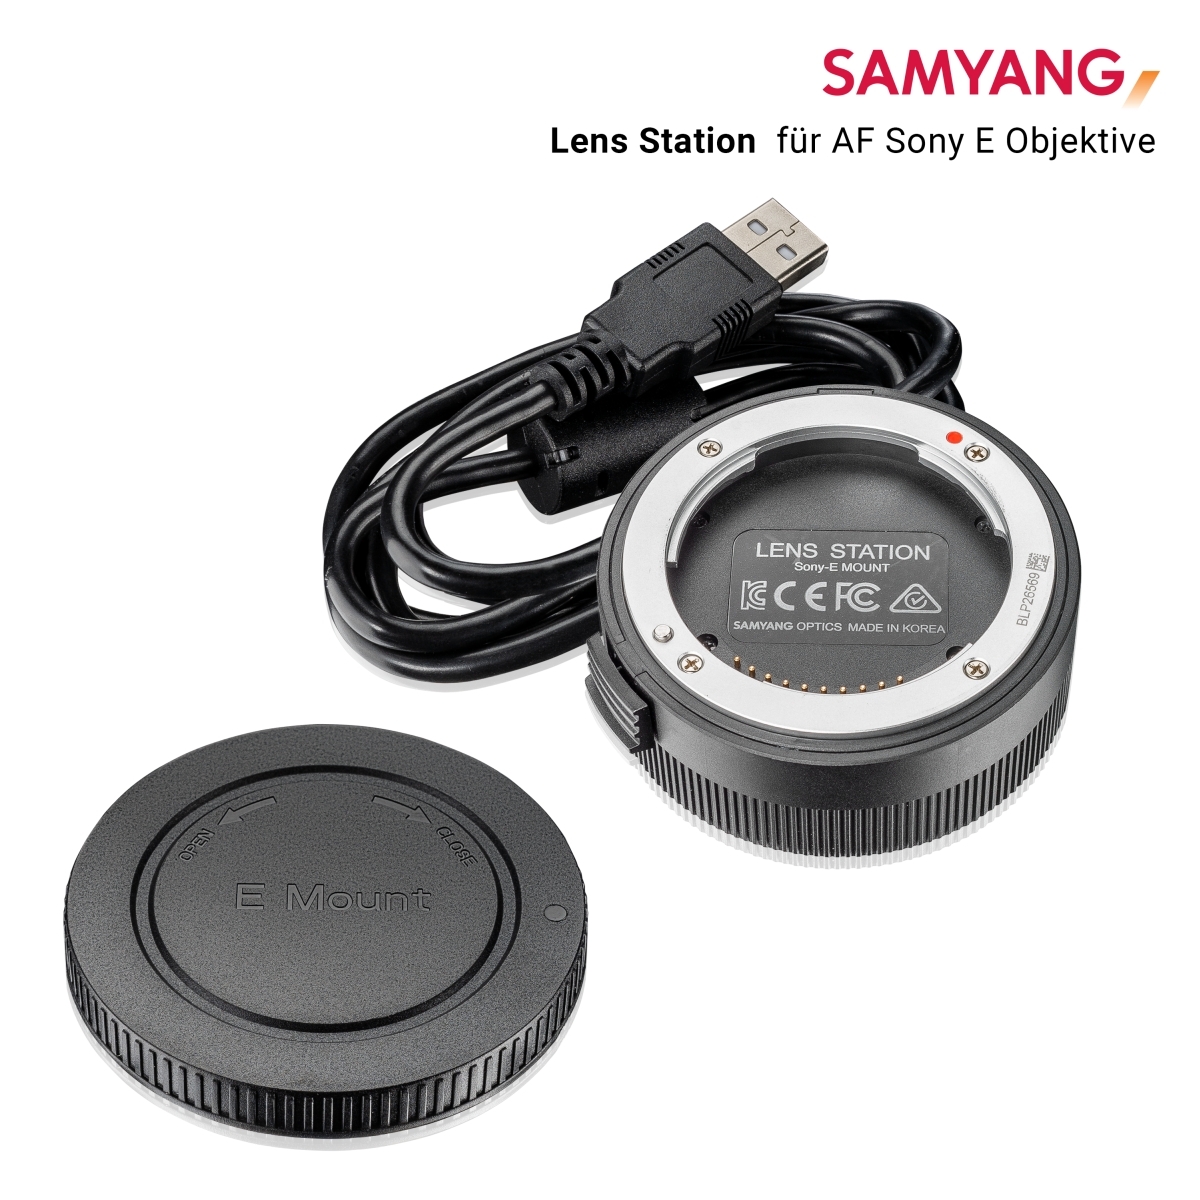 Samyang Lens Station für AF-Objektive mit Sony E-Mount